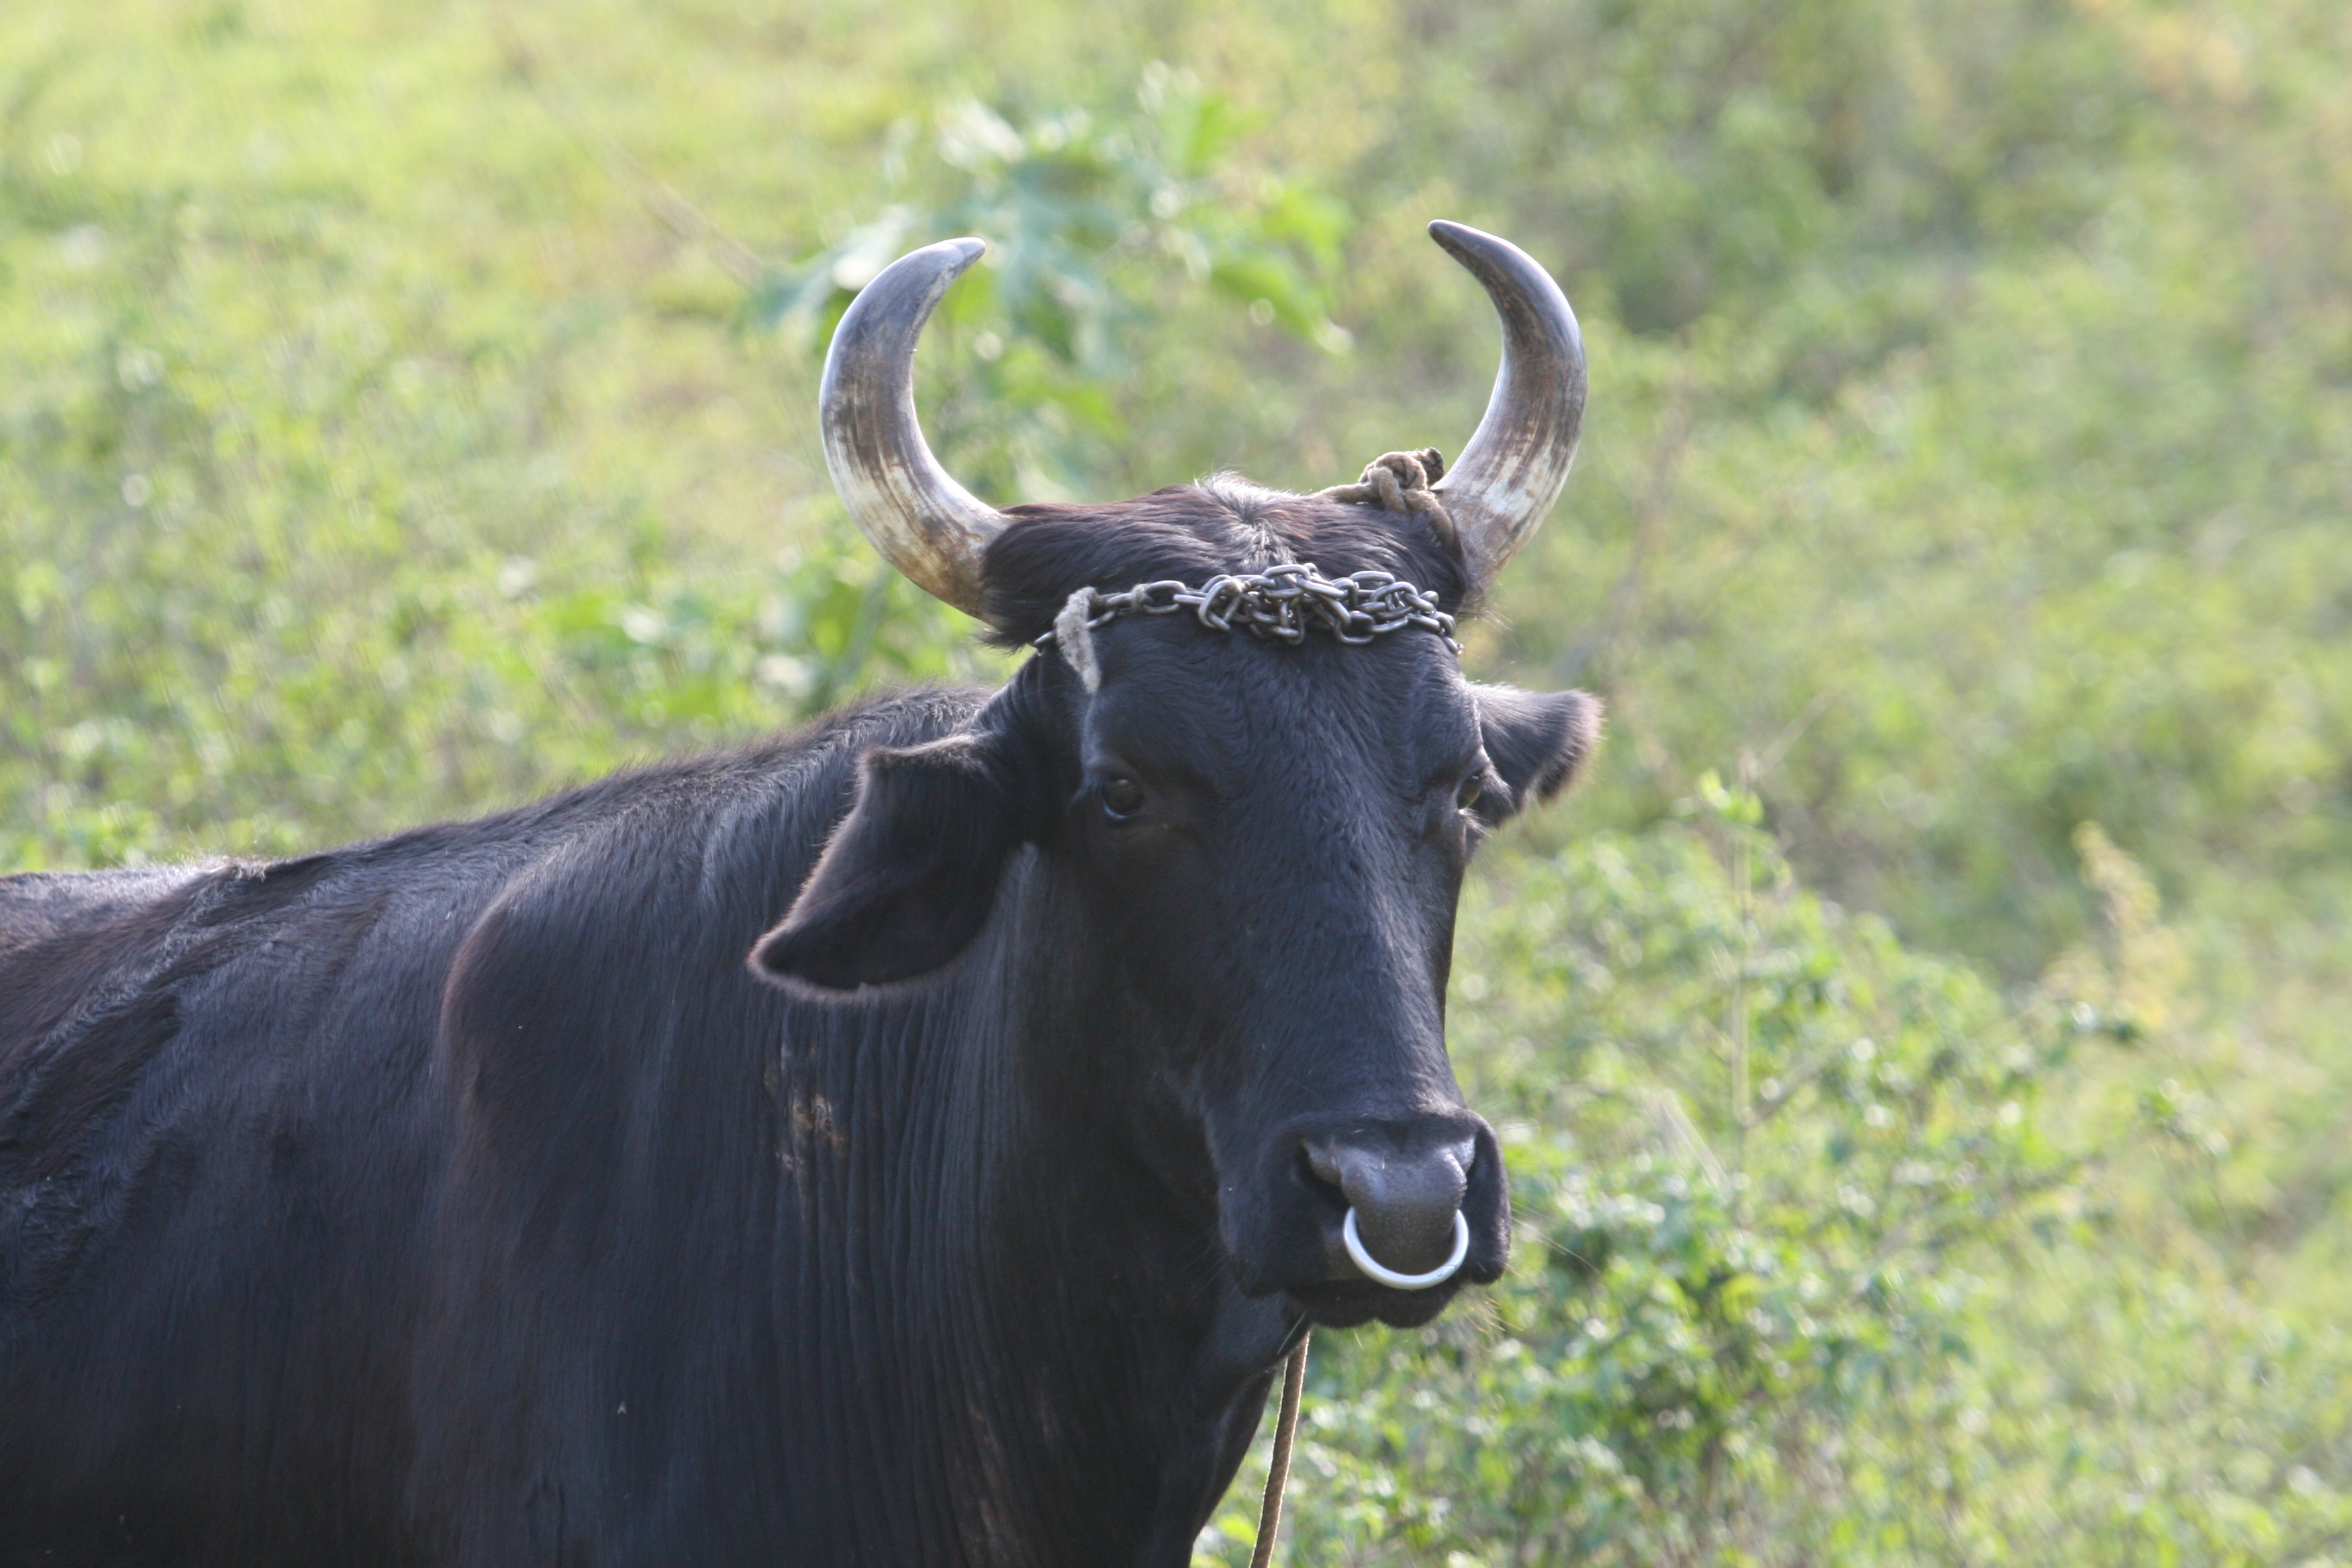 Bull at Vinales Pinar del Rio